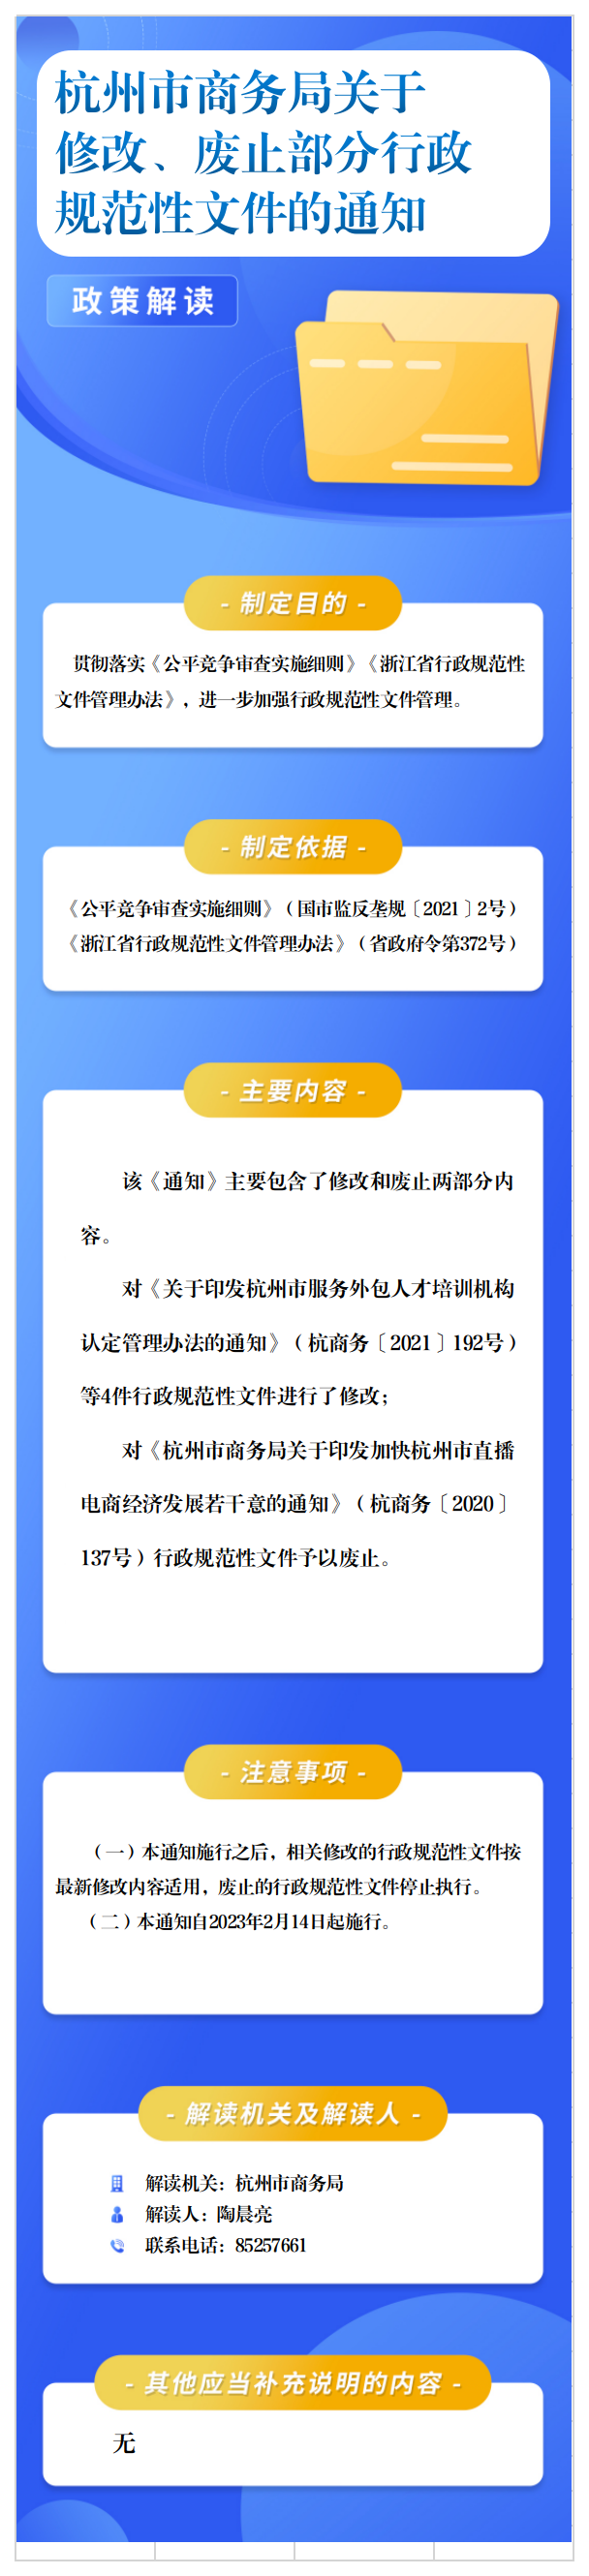 杭州市商务局关于修改、废止部分行政规范性文件的通知（文字版）.docx.png